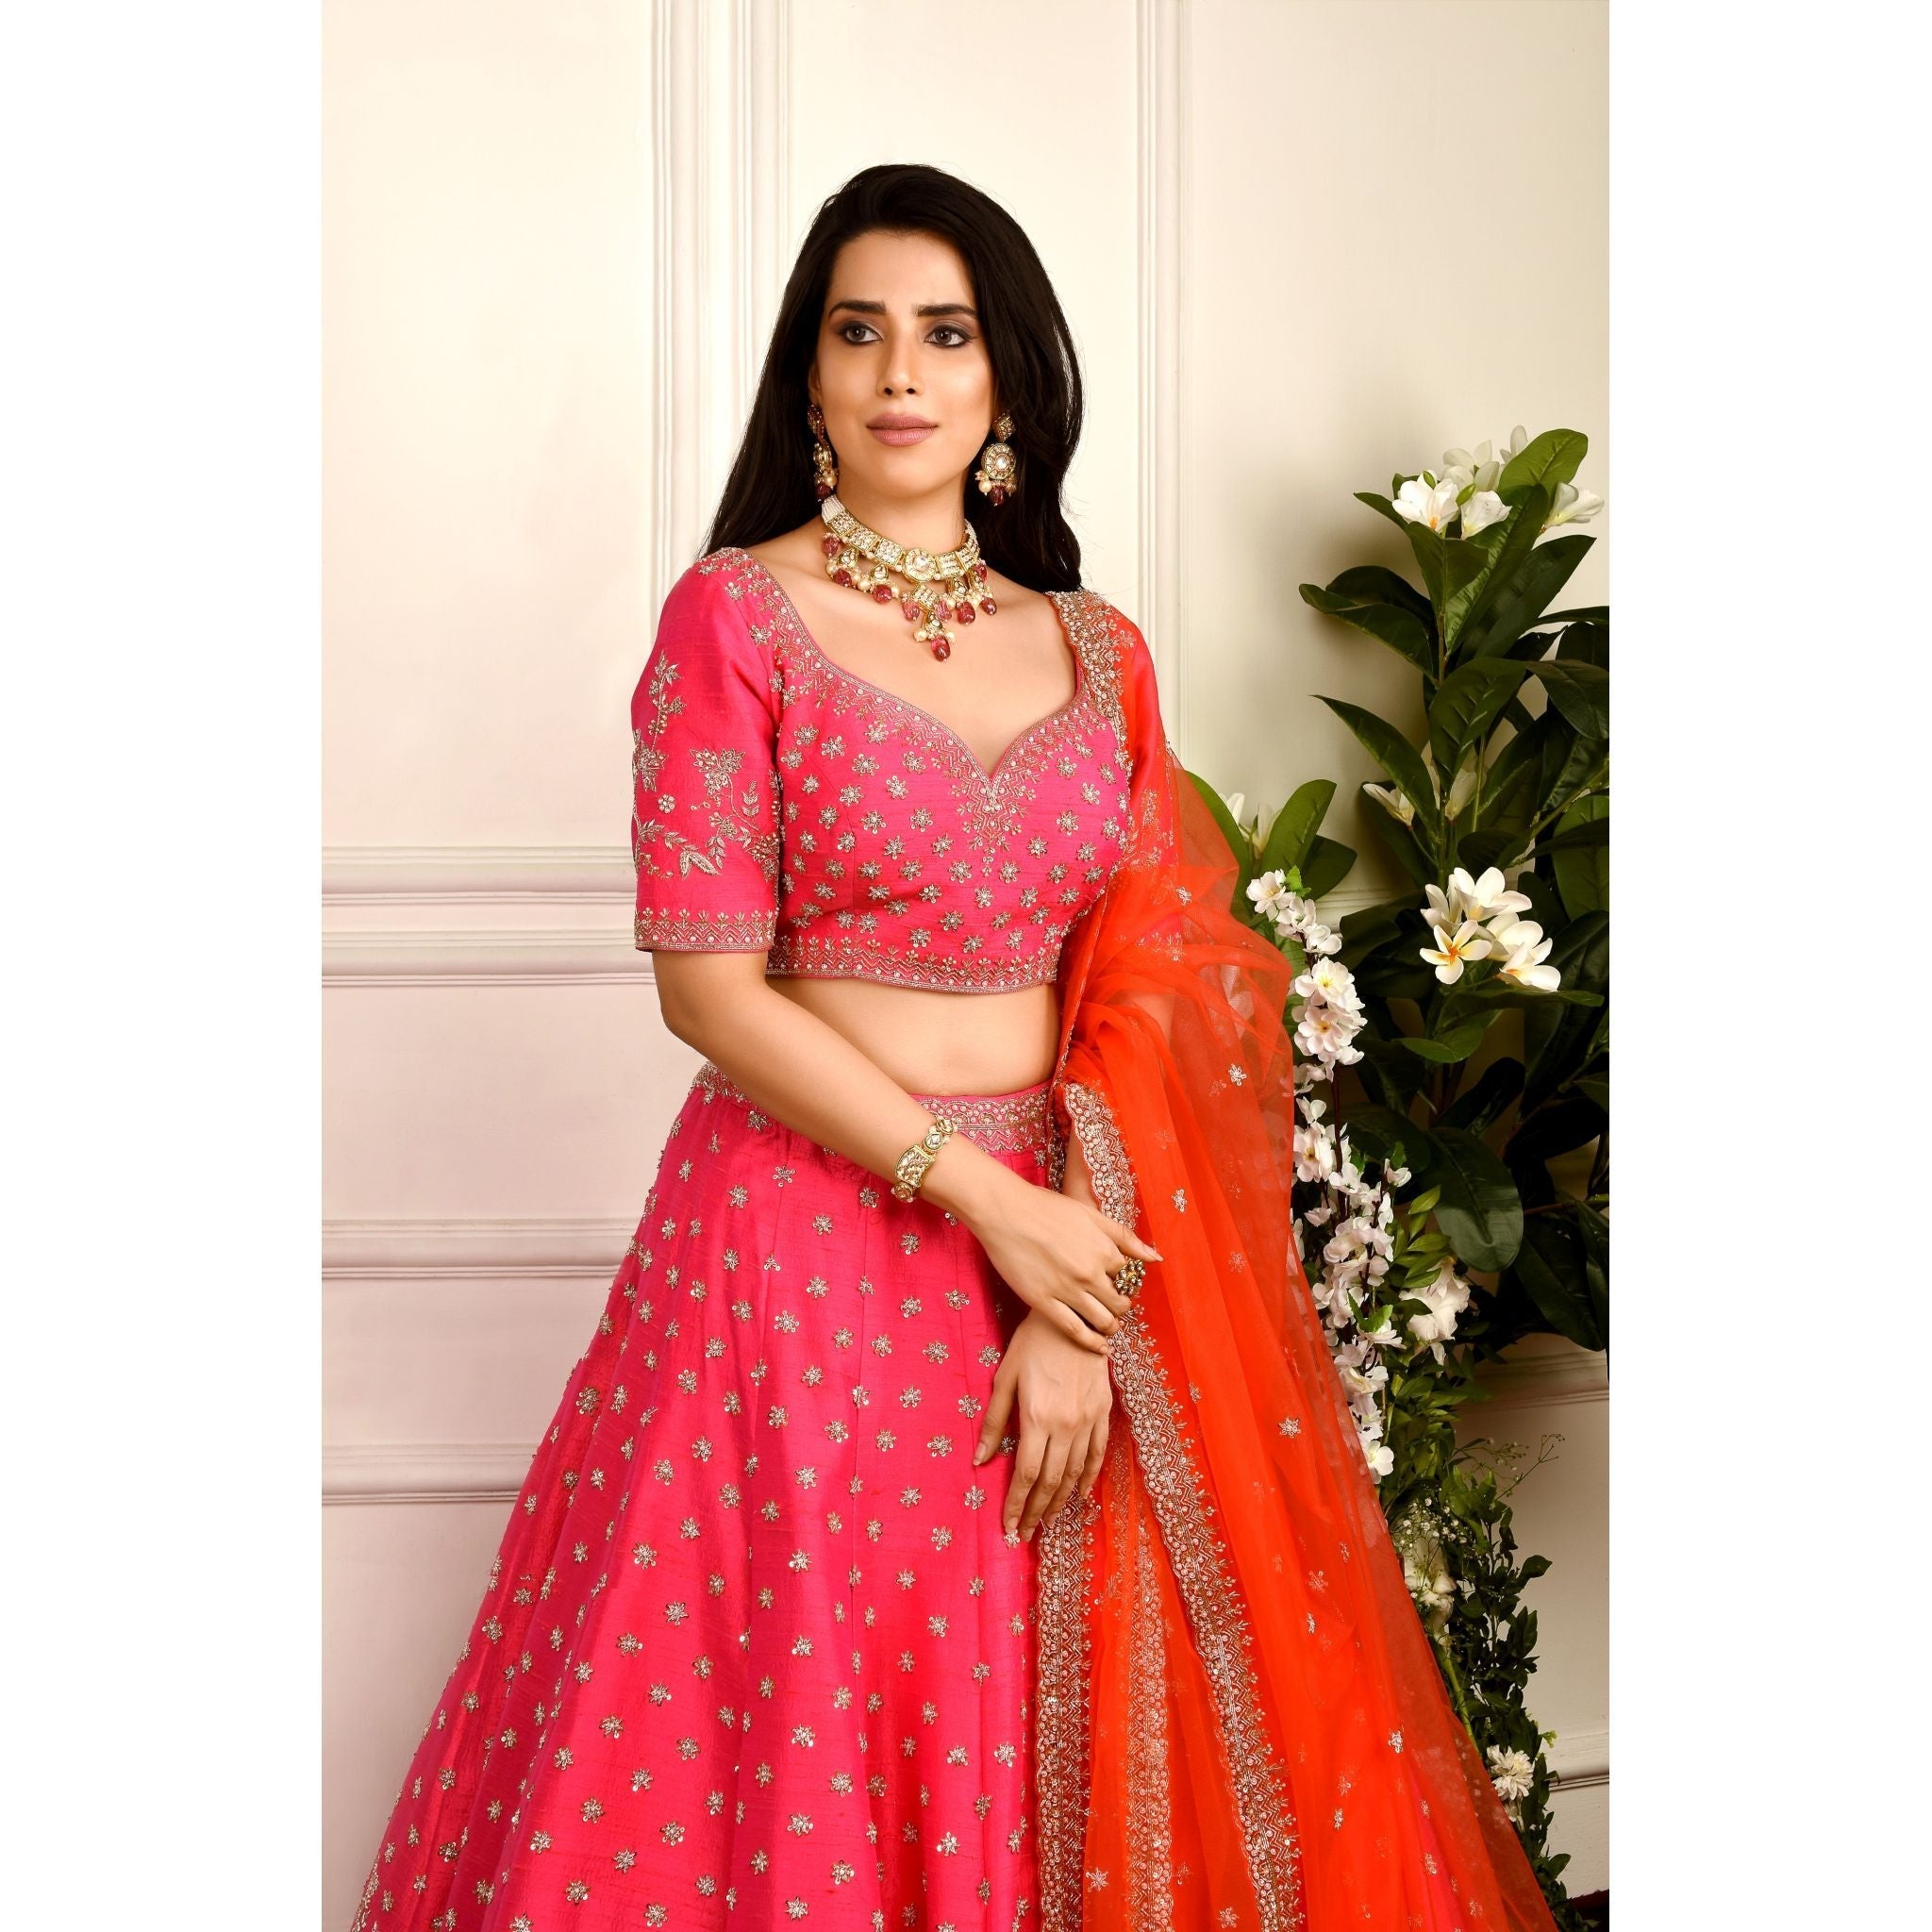 Hot Pink And Orange Zardozi Lehenga Set - Indian Designer Bridal Wedding Outfit